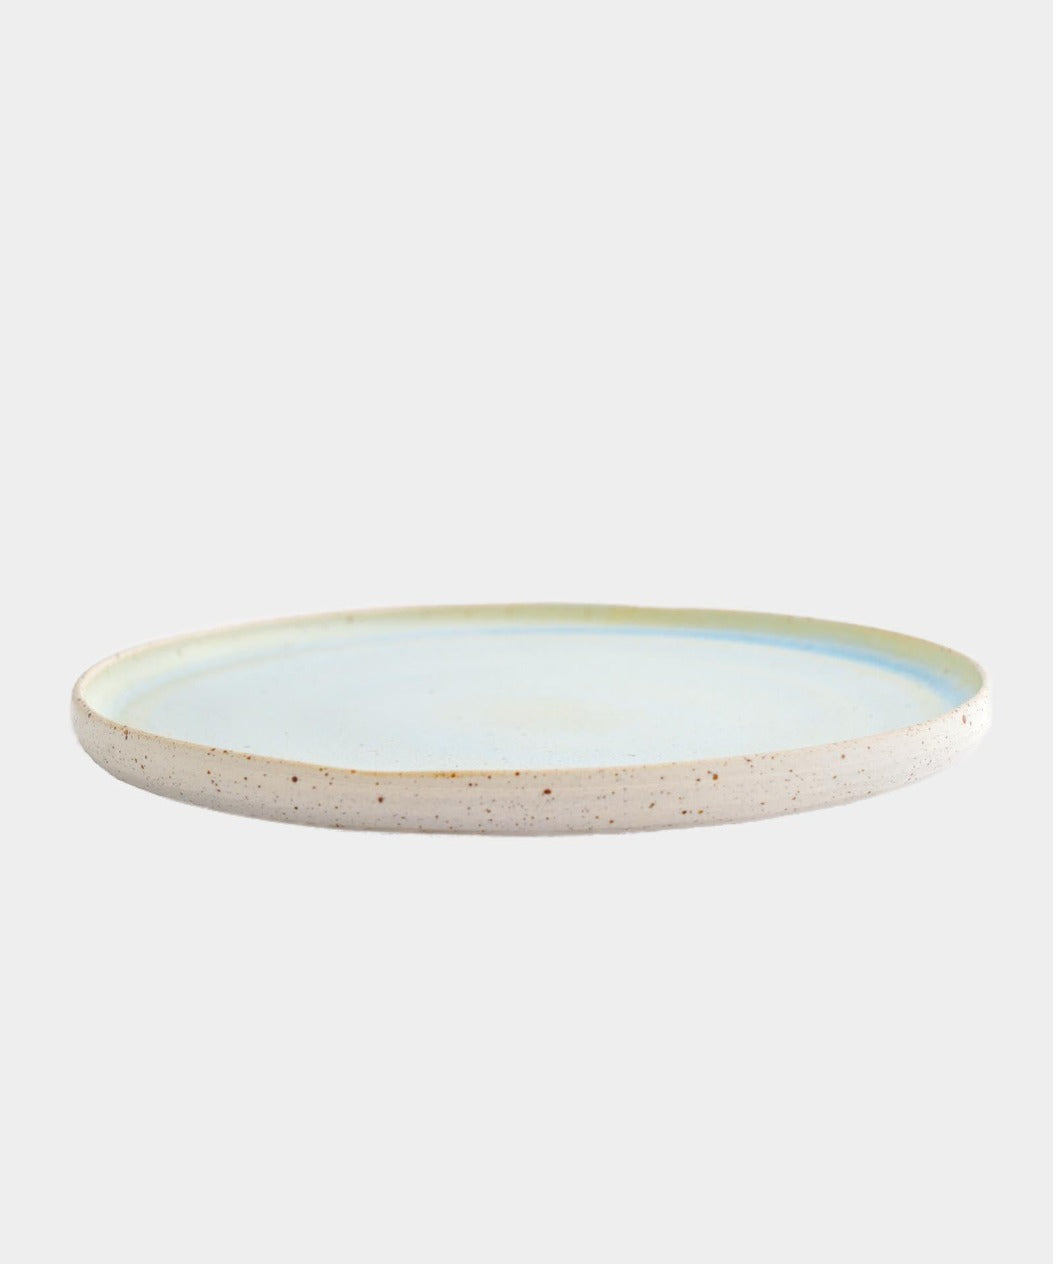 Håndlavet Keramik middagstallerken | AQUA by Vang | Kerama 1